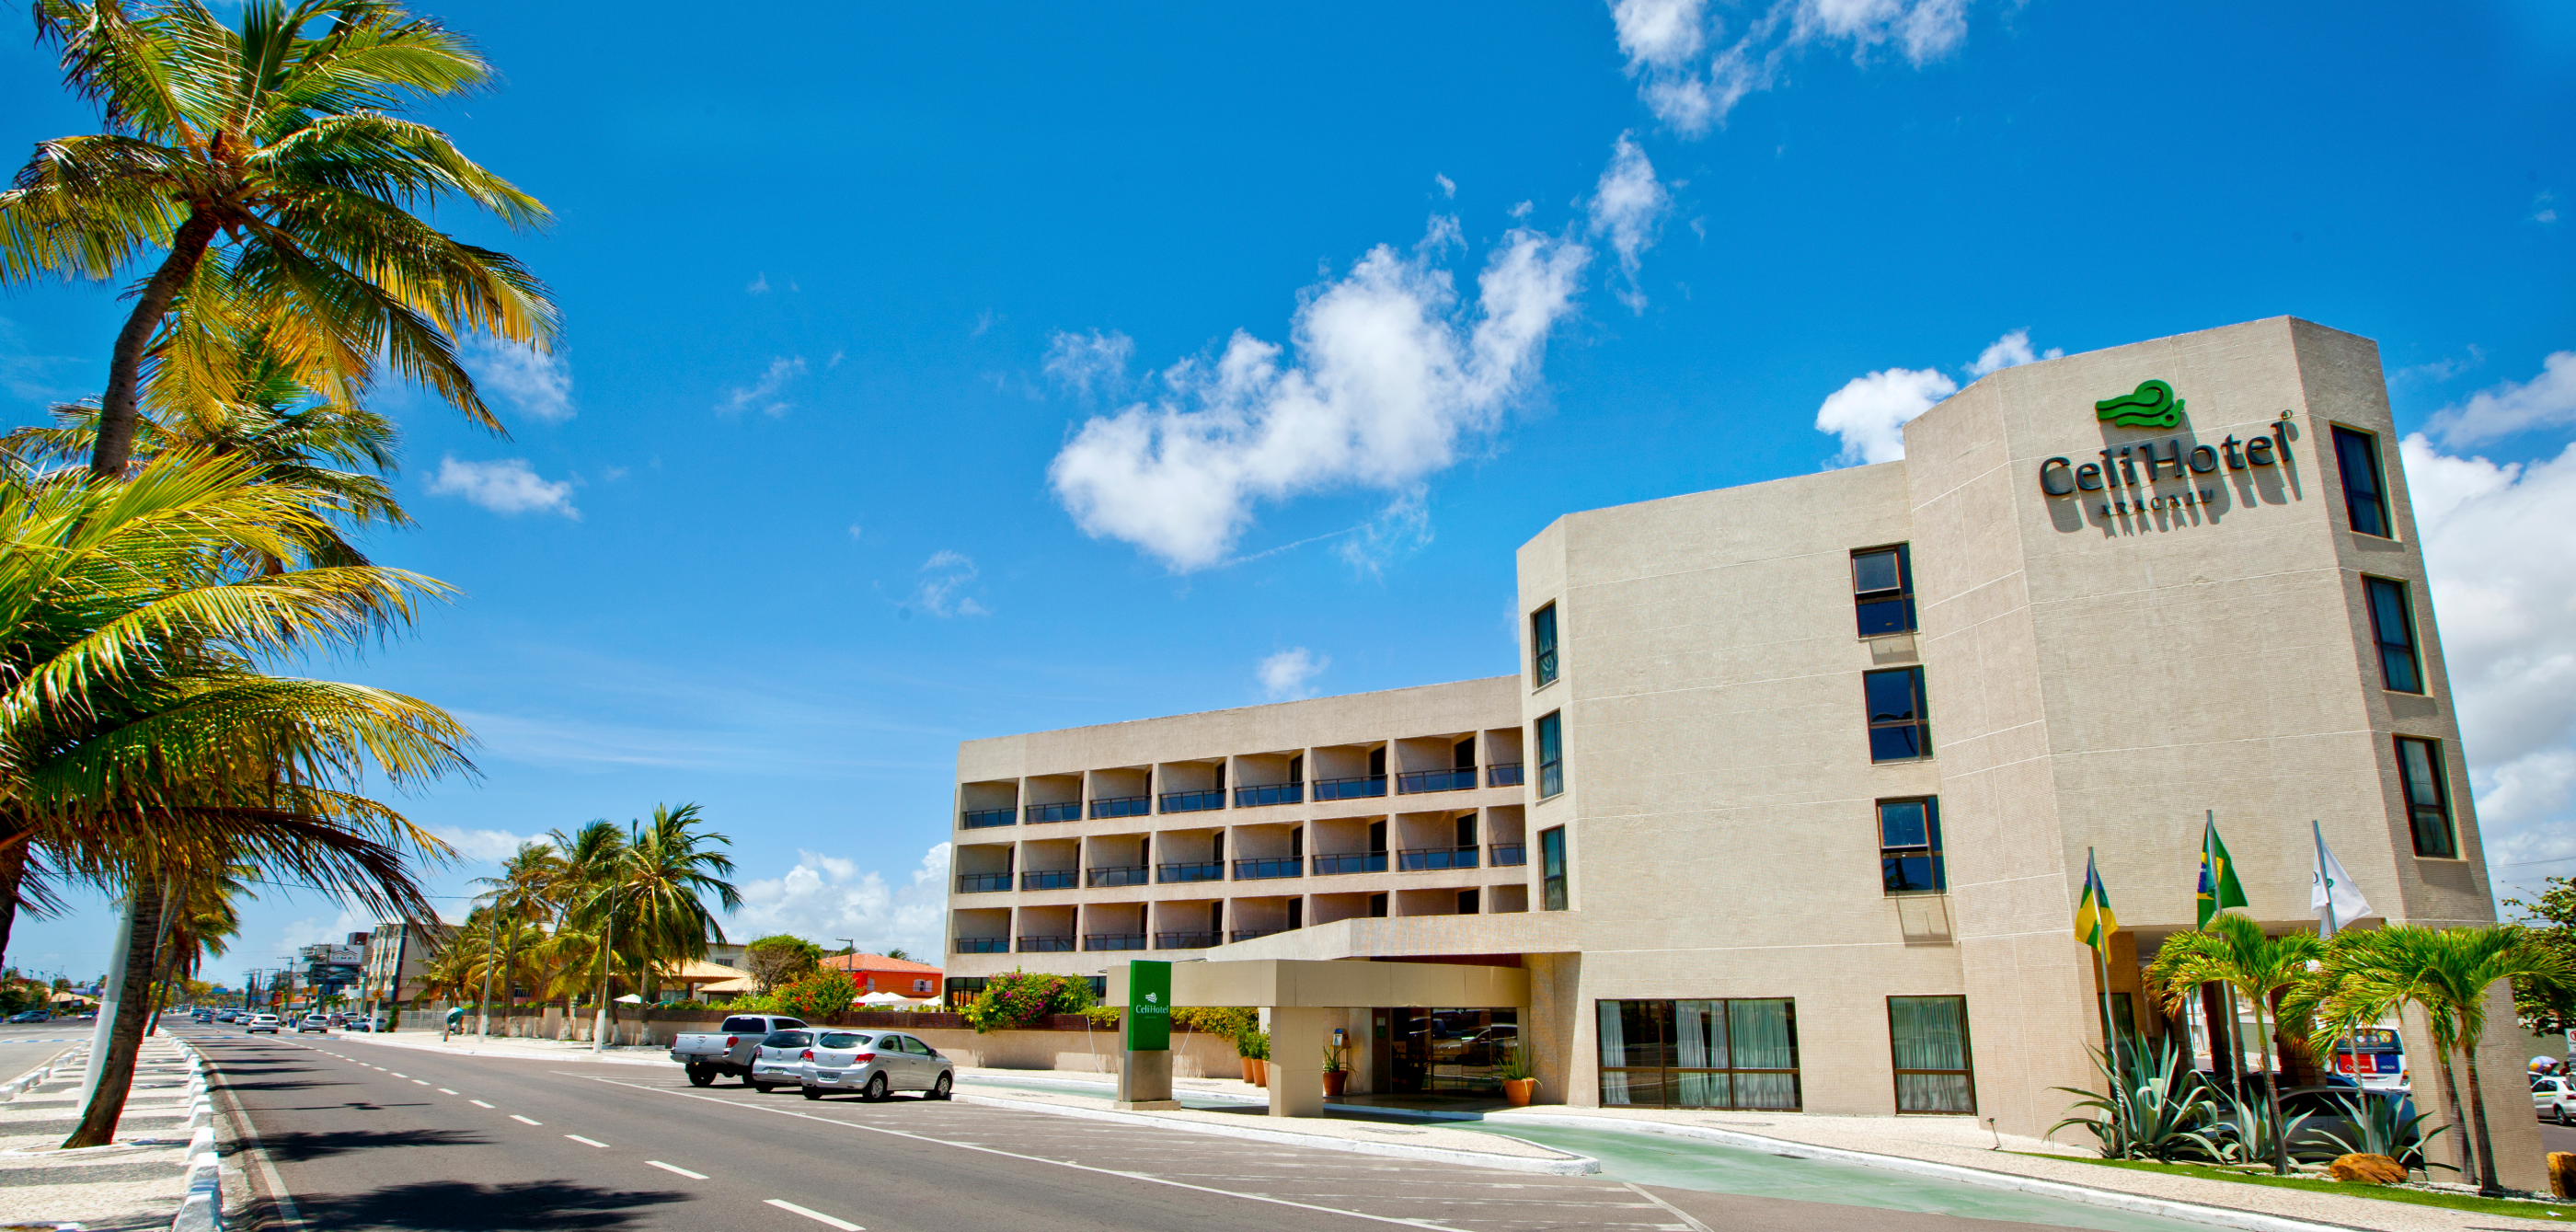 hotéis em Aracaju, Celi Hotel Hotel Celi, Celi, tartarugas, orla de Aracaju, Aracaju, fotos de Aracaju, Sergipe, hotéis em Aracaju, lugar Perfeito